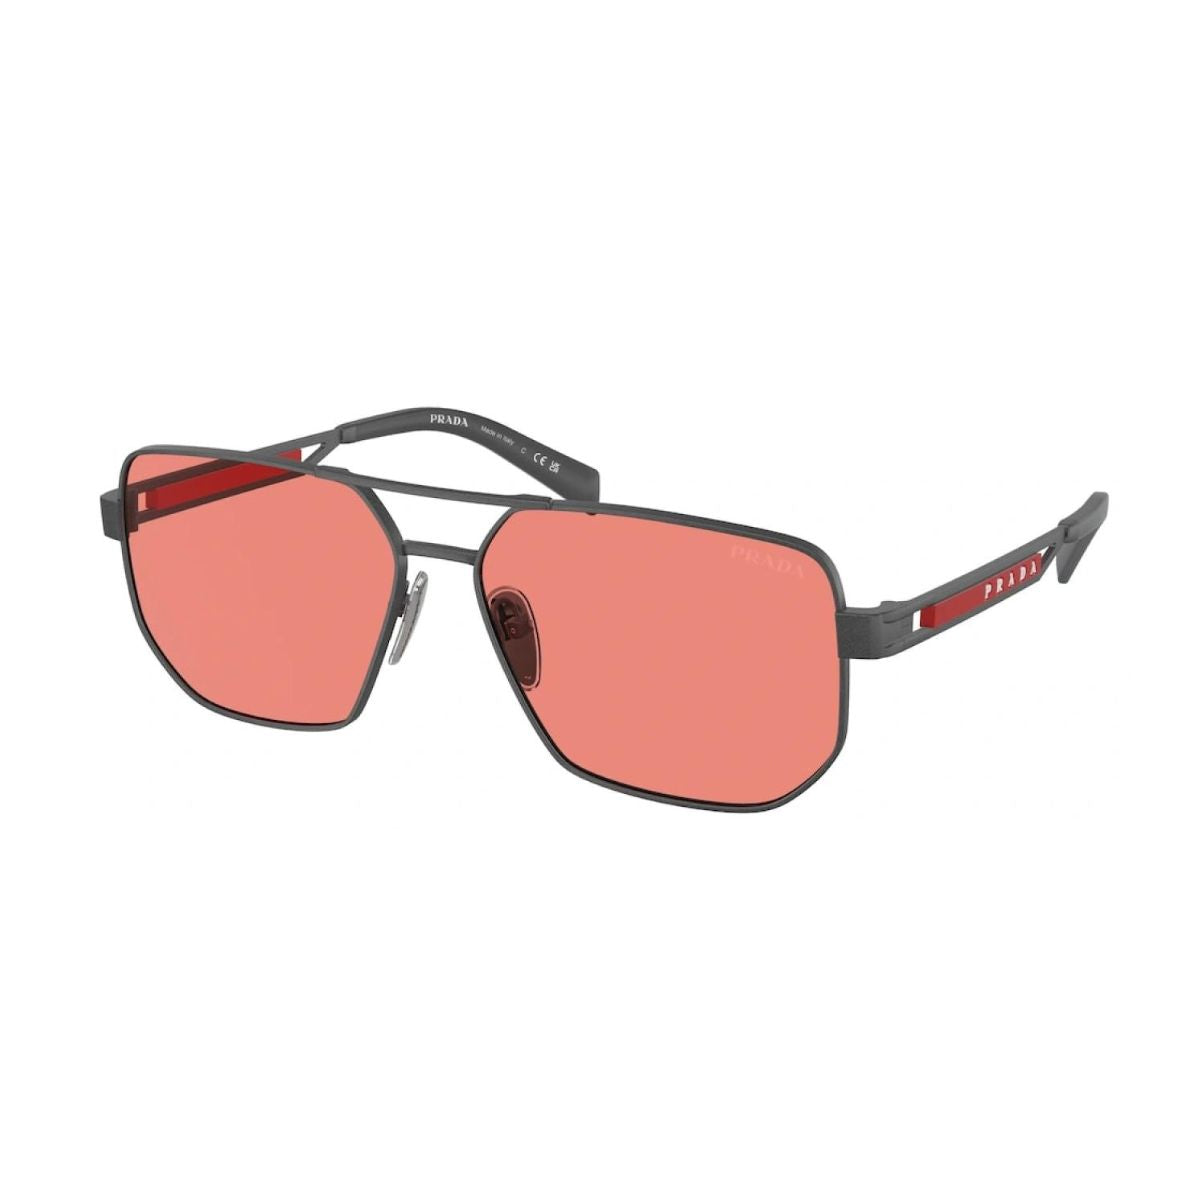 "Buy Prada SPS51Z 15P-20B UV Resistant Sunglasses For Men At Optorium""